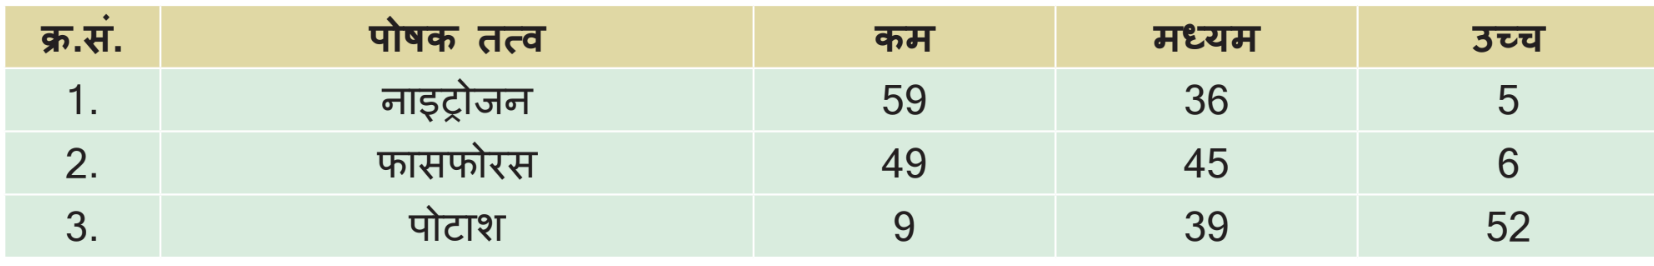  सारणी-2 भारत में विभिन्न जिलों में मृदा उर्वरता वर्गों का विवरण (प्रतिशत) 